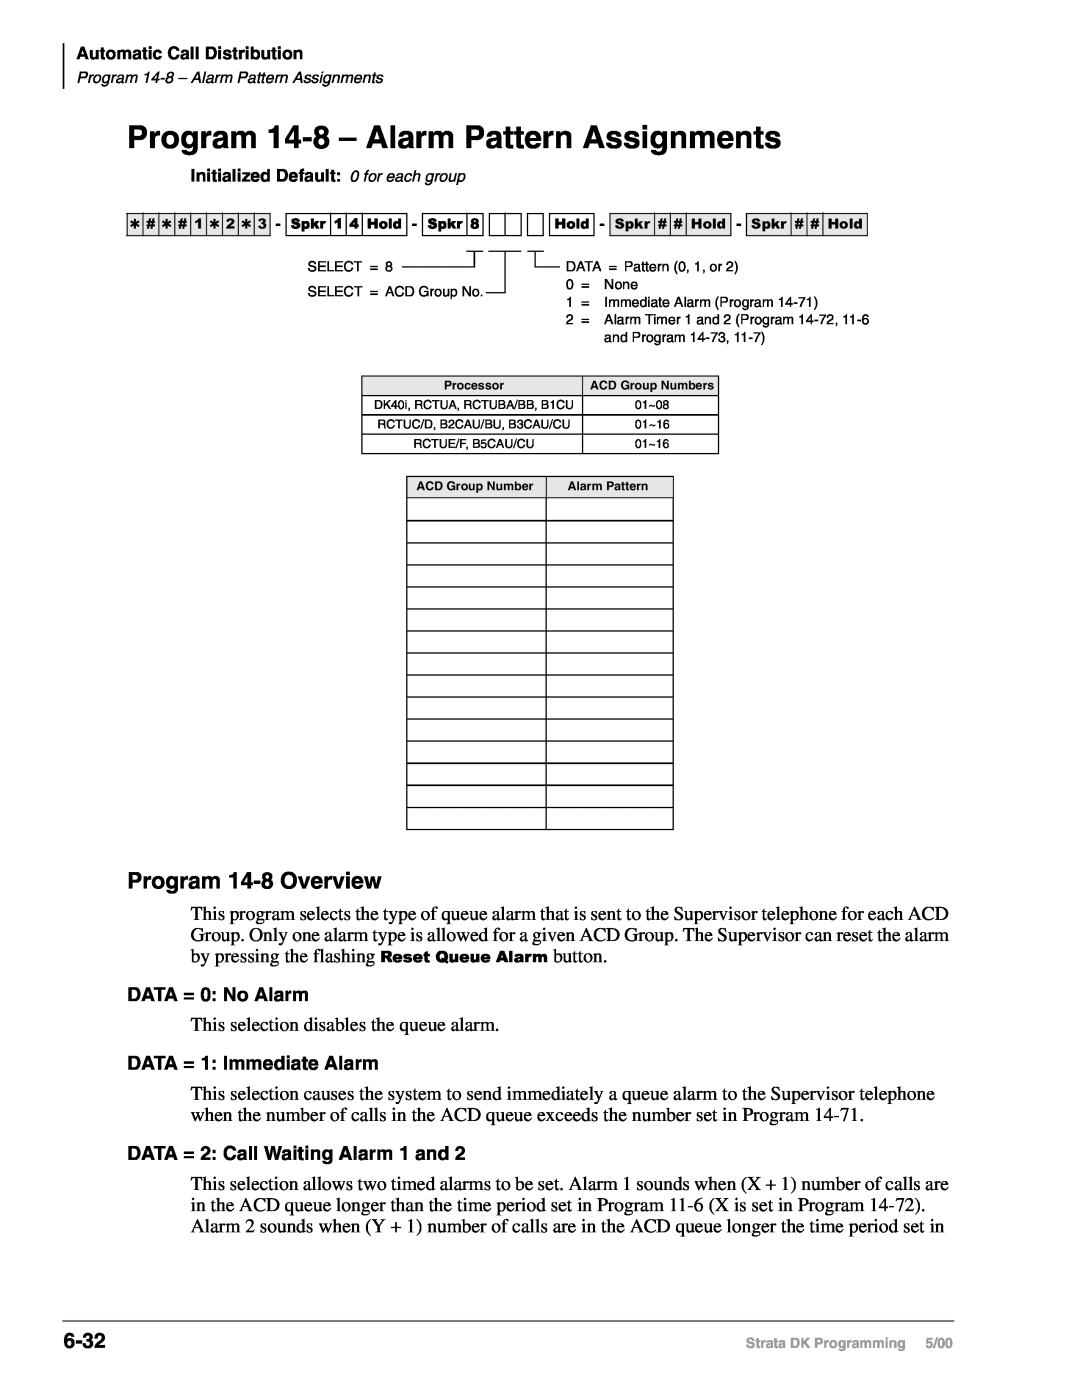 Toshiba DK40I, dk14, DK424I manual Program 14-8– Alarm Pattern Assignments, Program 14-8Overview, 6-32, DATA = 0: No Alarm 